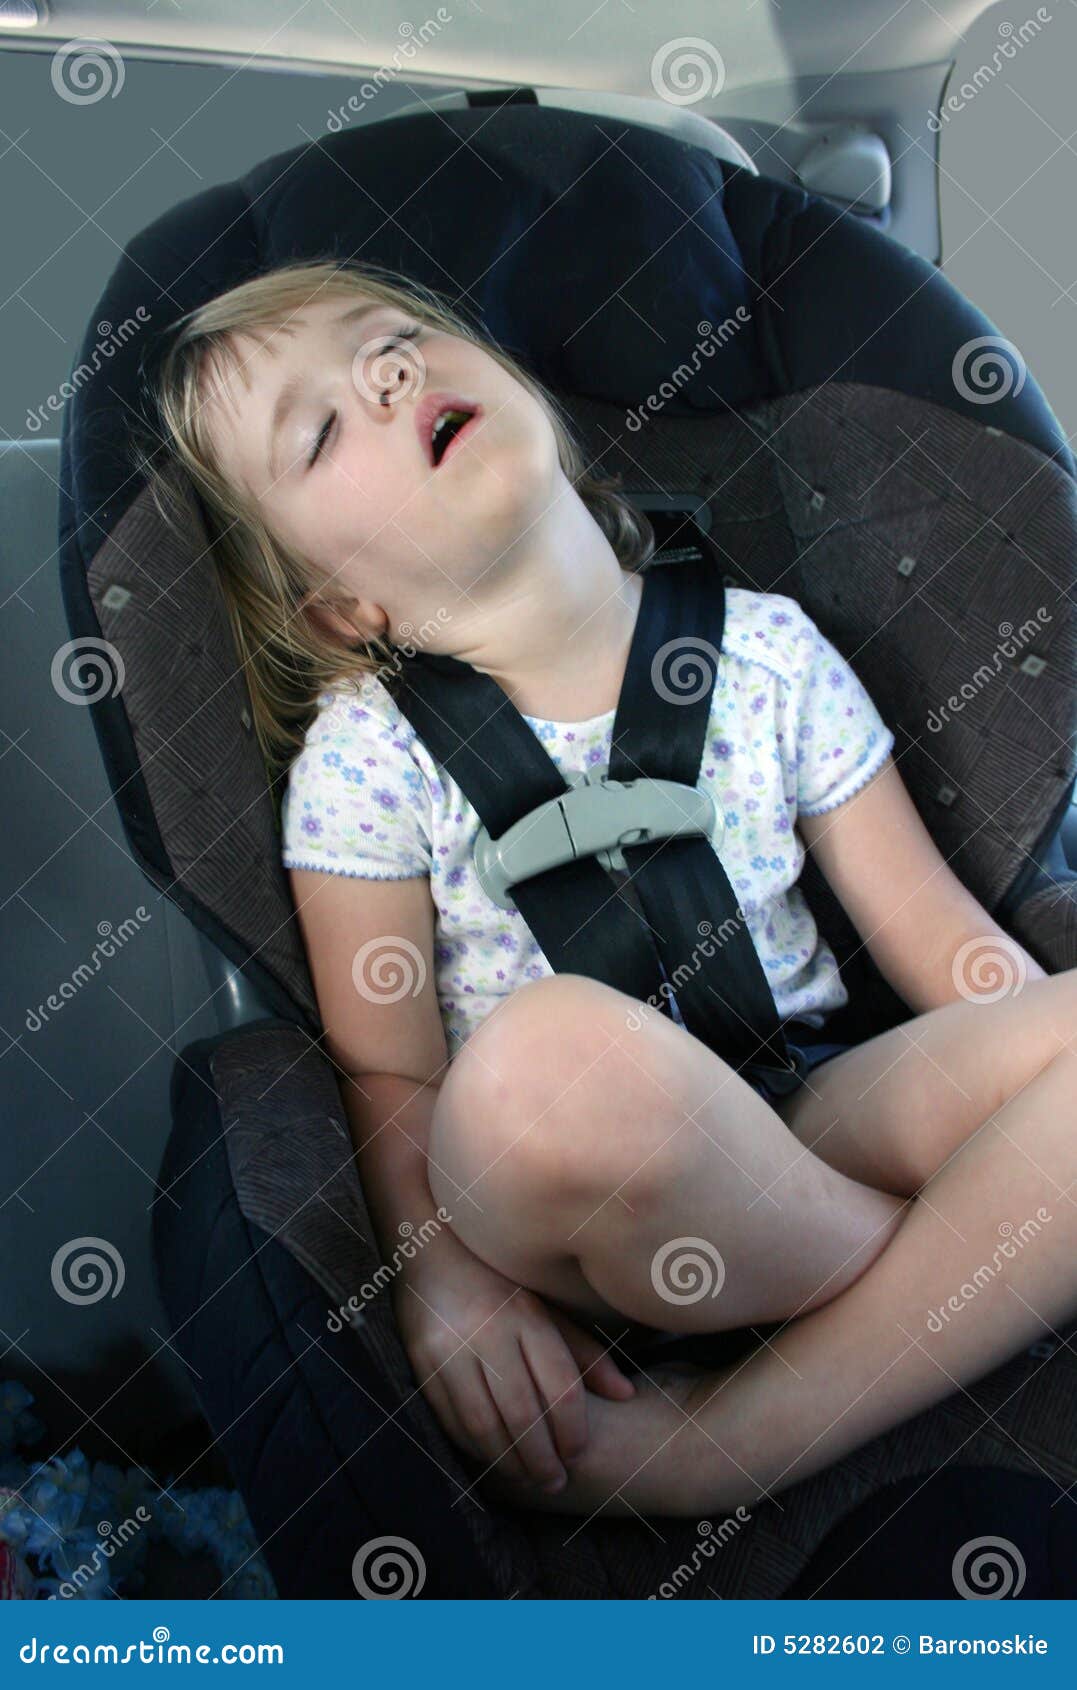 asleep in the car seat